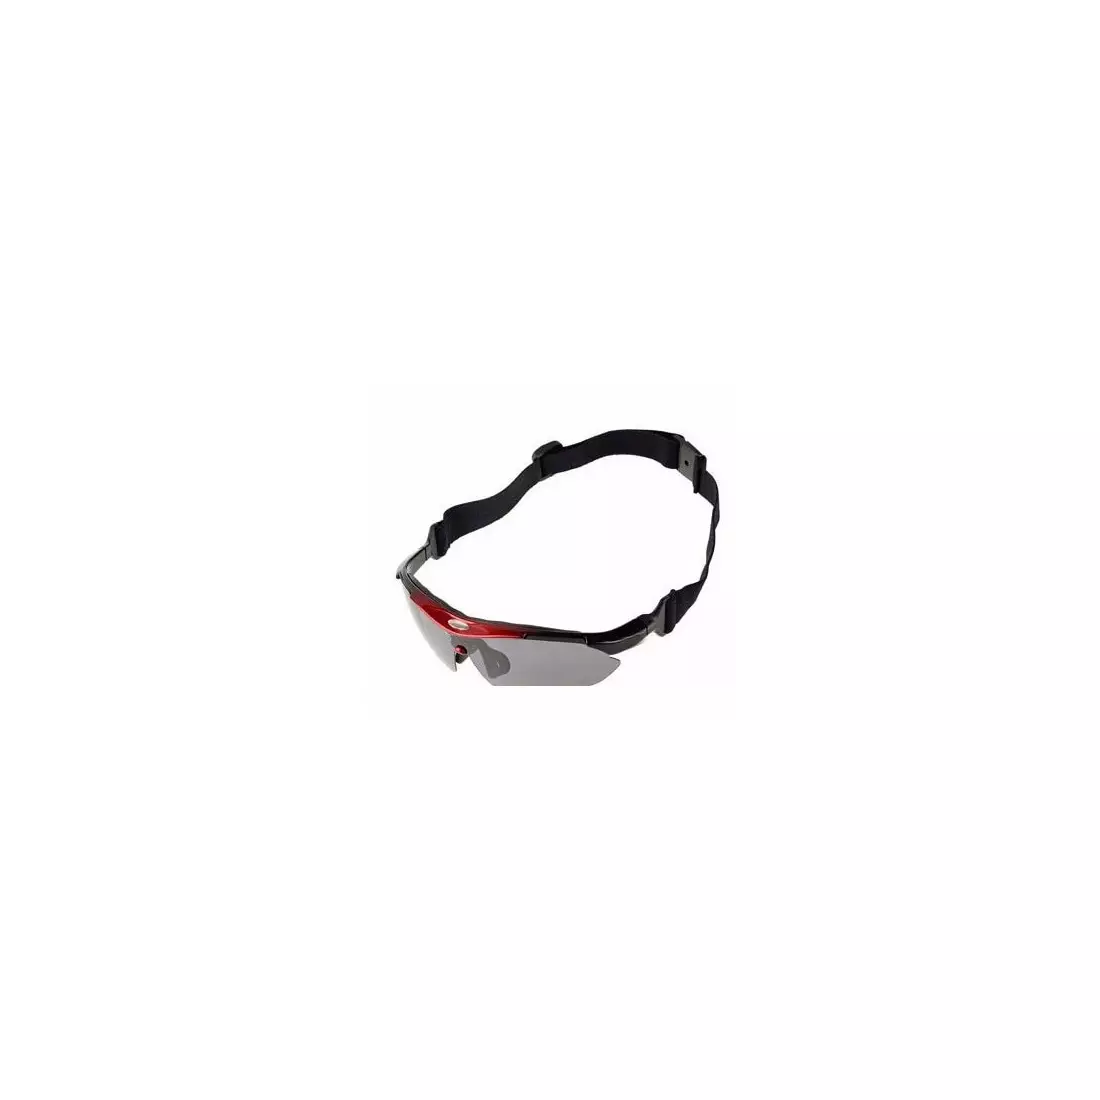 Rockbros Sportbrille mit Photochrom + Korrektureinsatz rot 10141